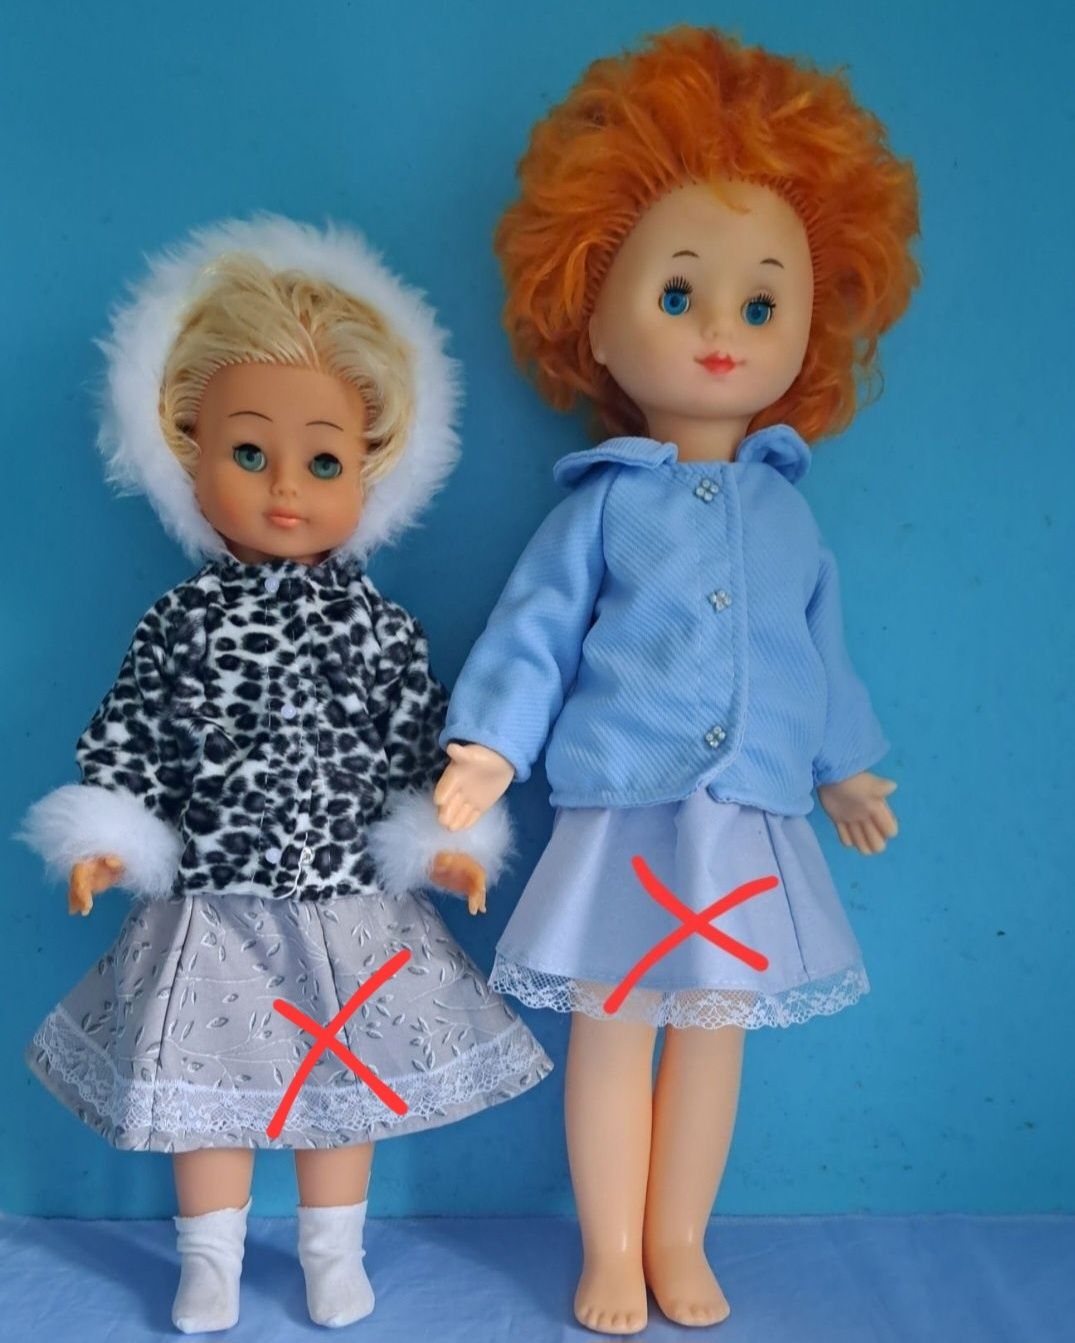 Верхняя теплая одежда: куртка, пальто, шуба на куклу СССР, ГДР 32-60см